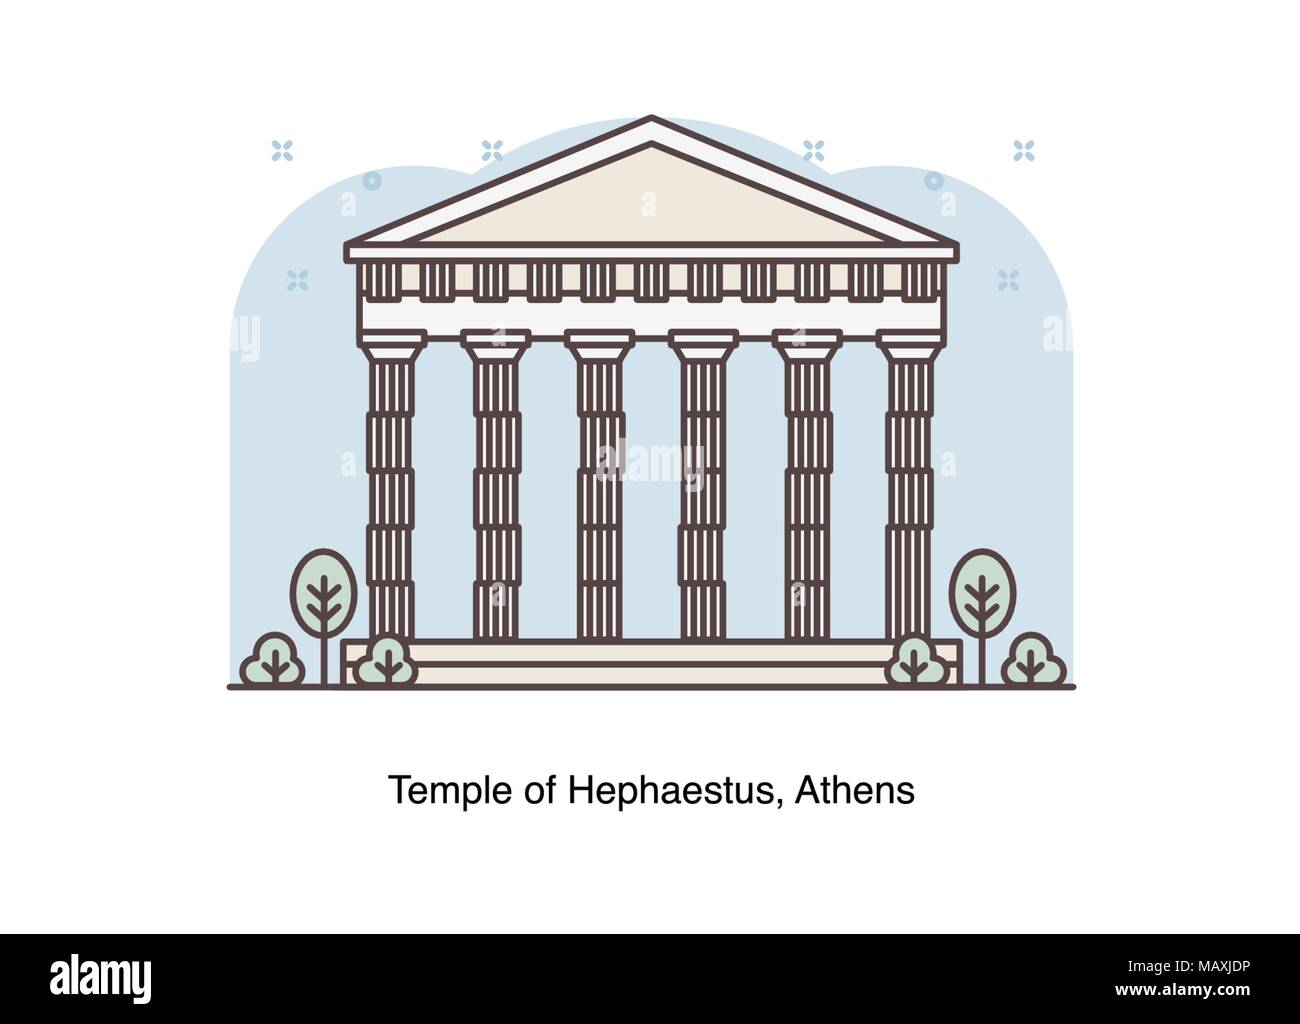 Vektor linie Abbildung der Tempel des Hephaistos, Athen, Griechenland. Stock Vektor